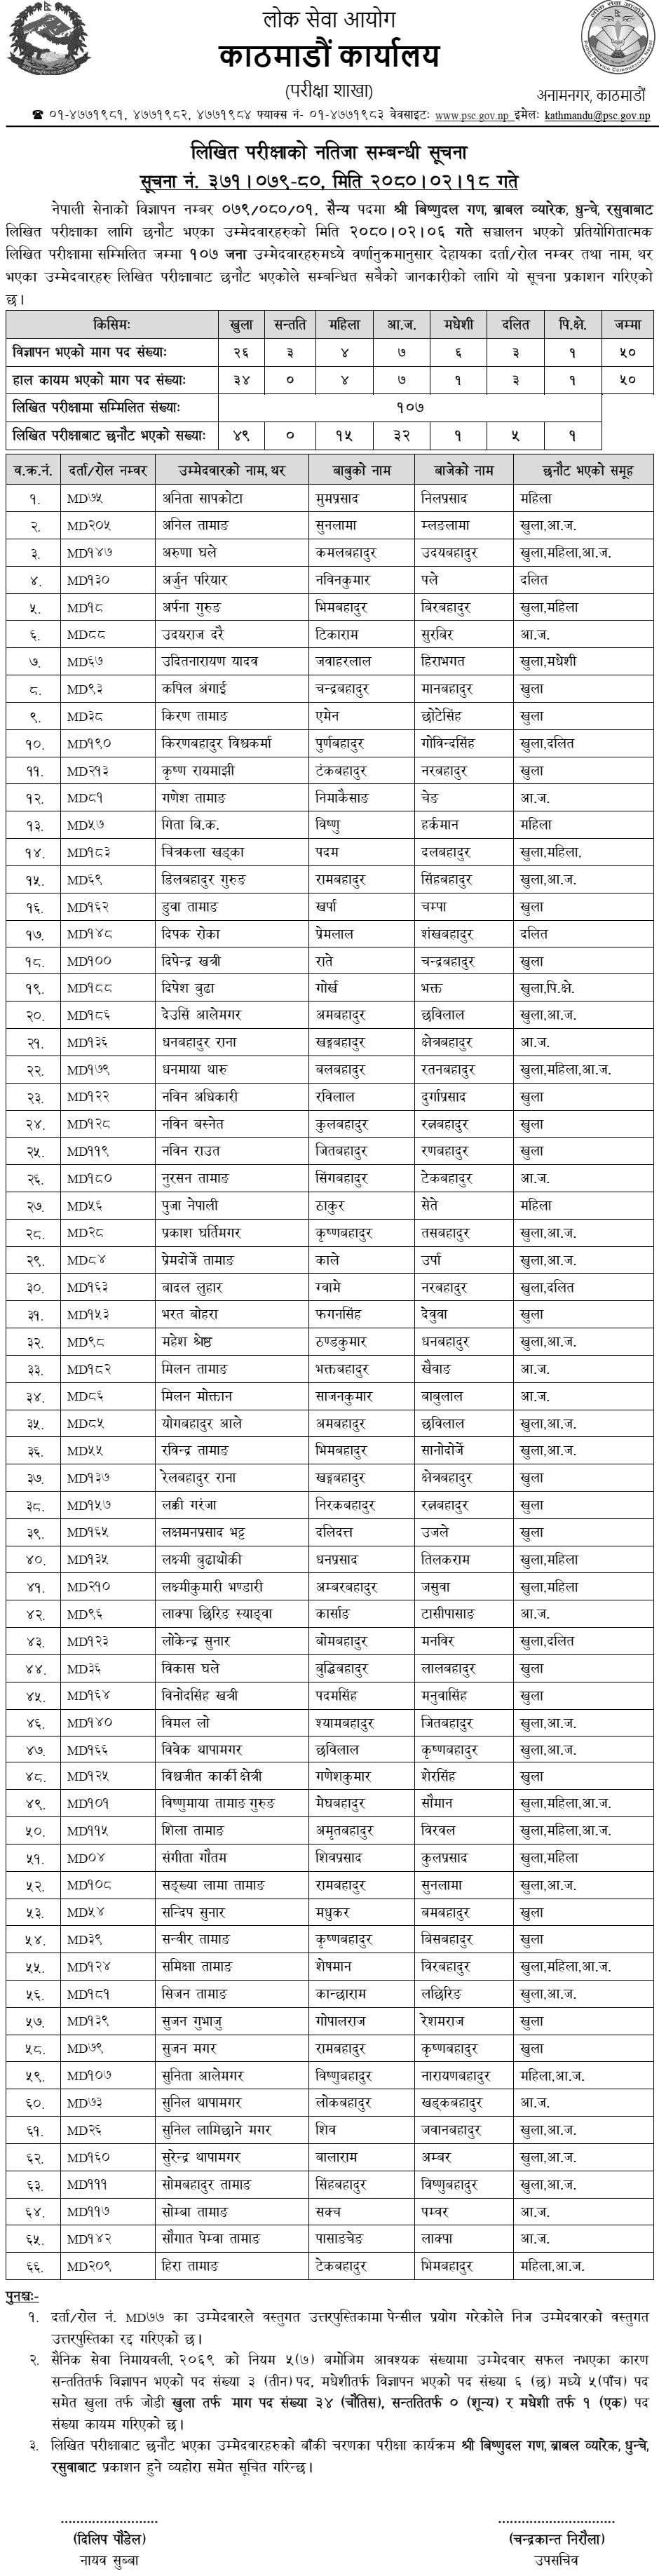 Nepal Army Sainya Written Exam Result 2080 (Rasuwa)